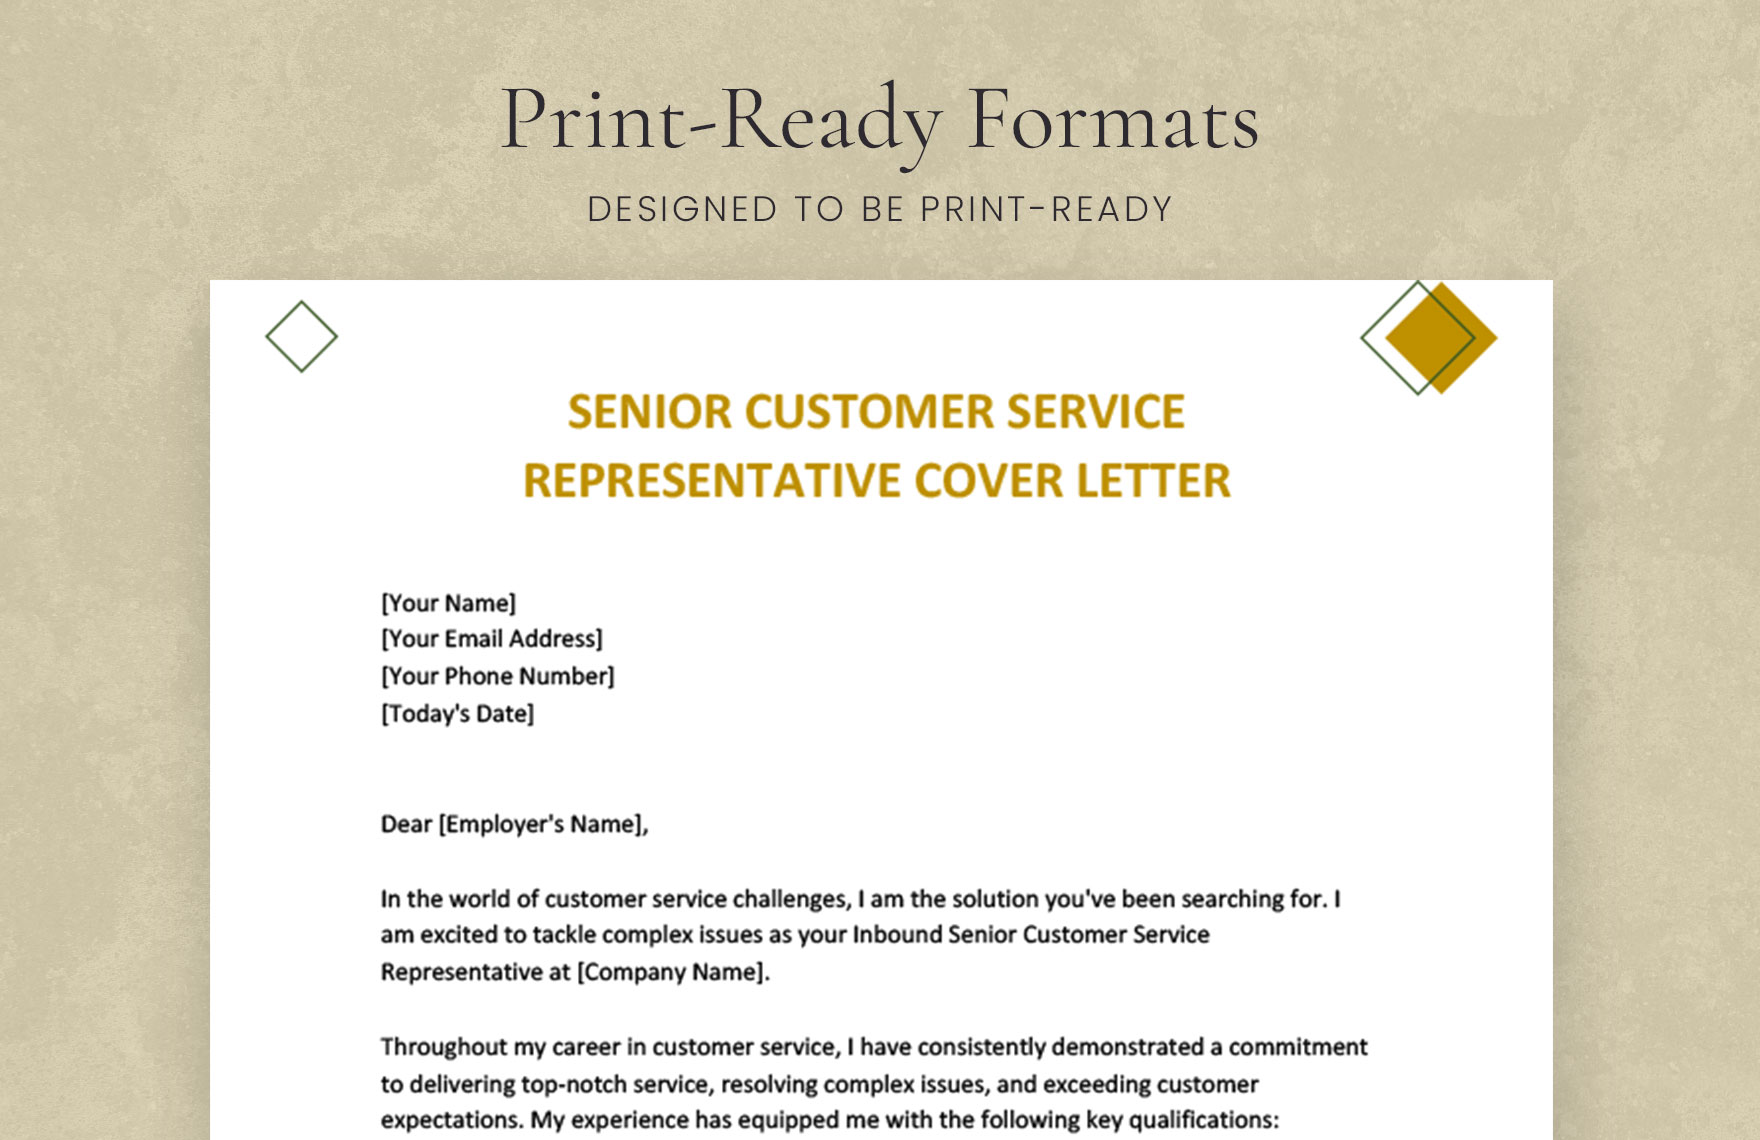 Senior Customer Service Representative Cover Letter